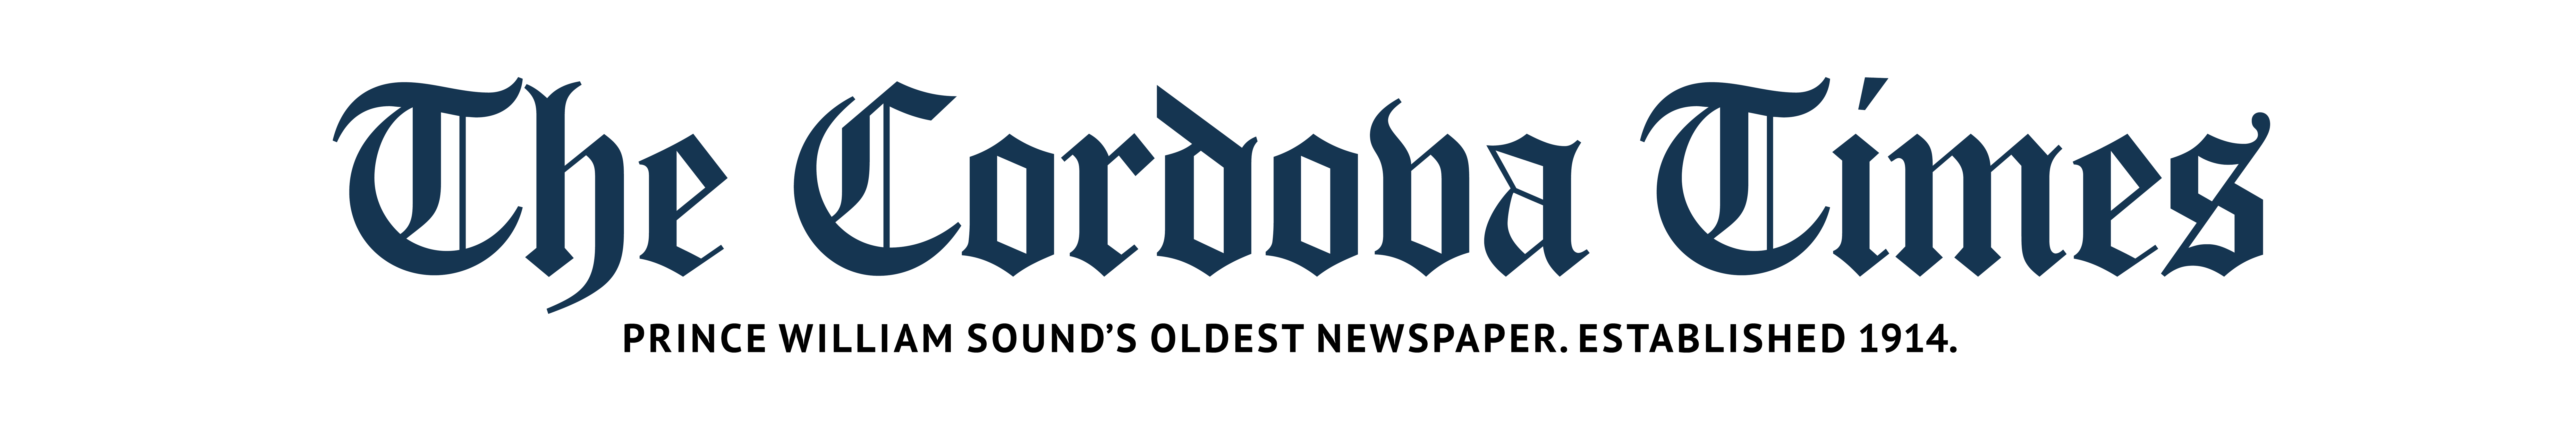 The Cordova Times